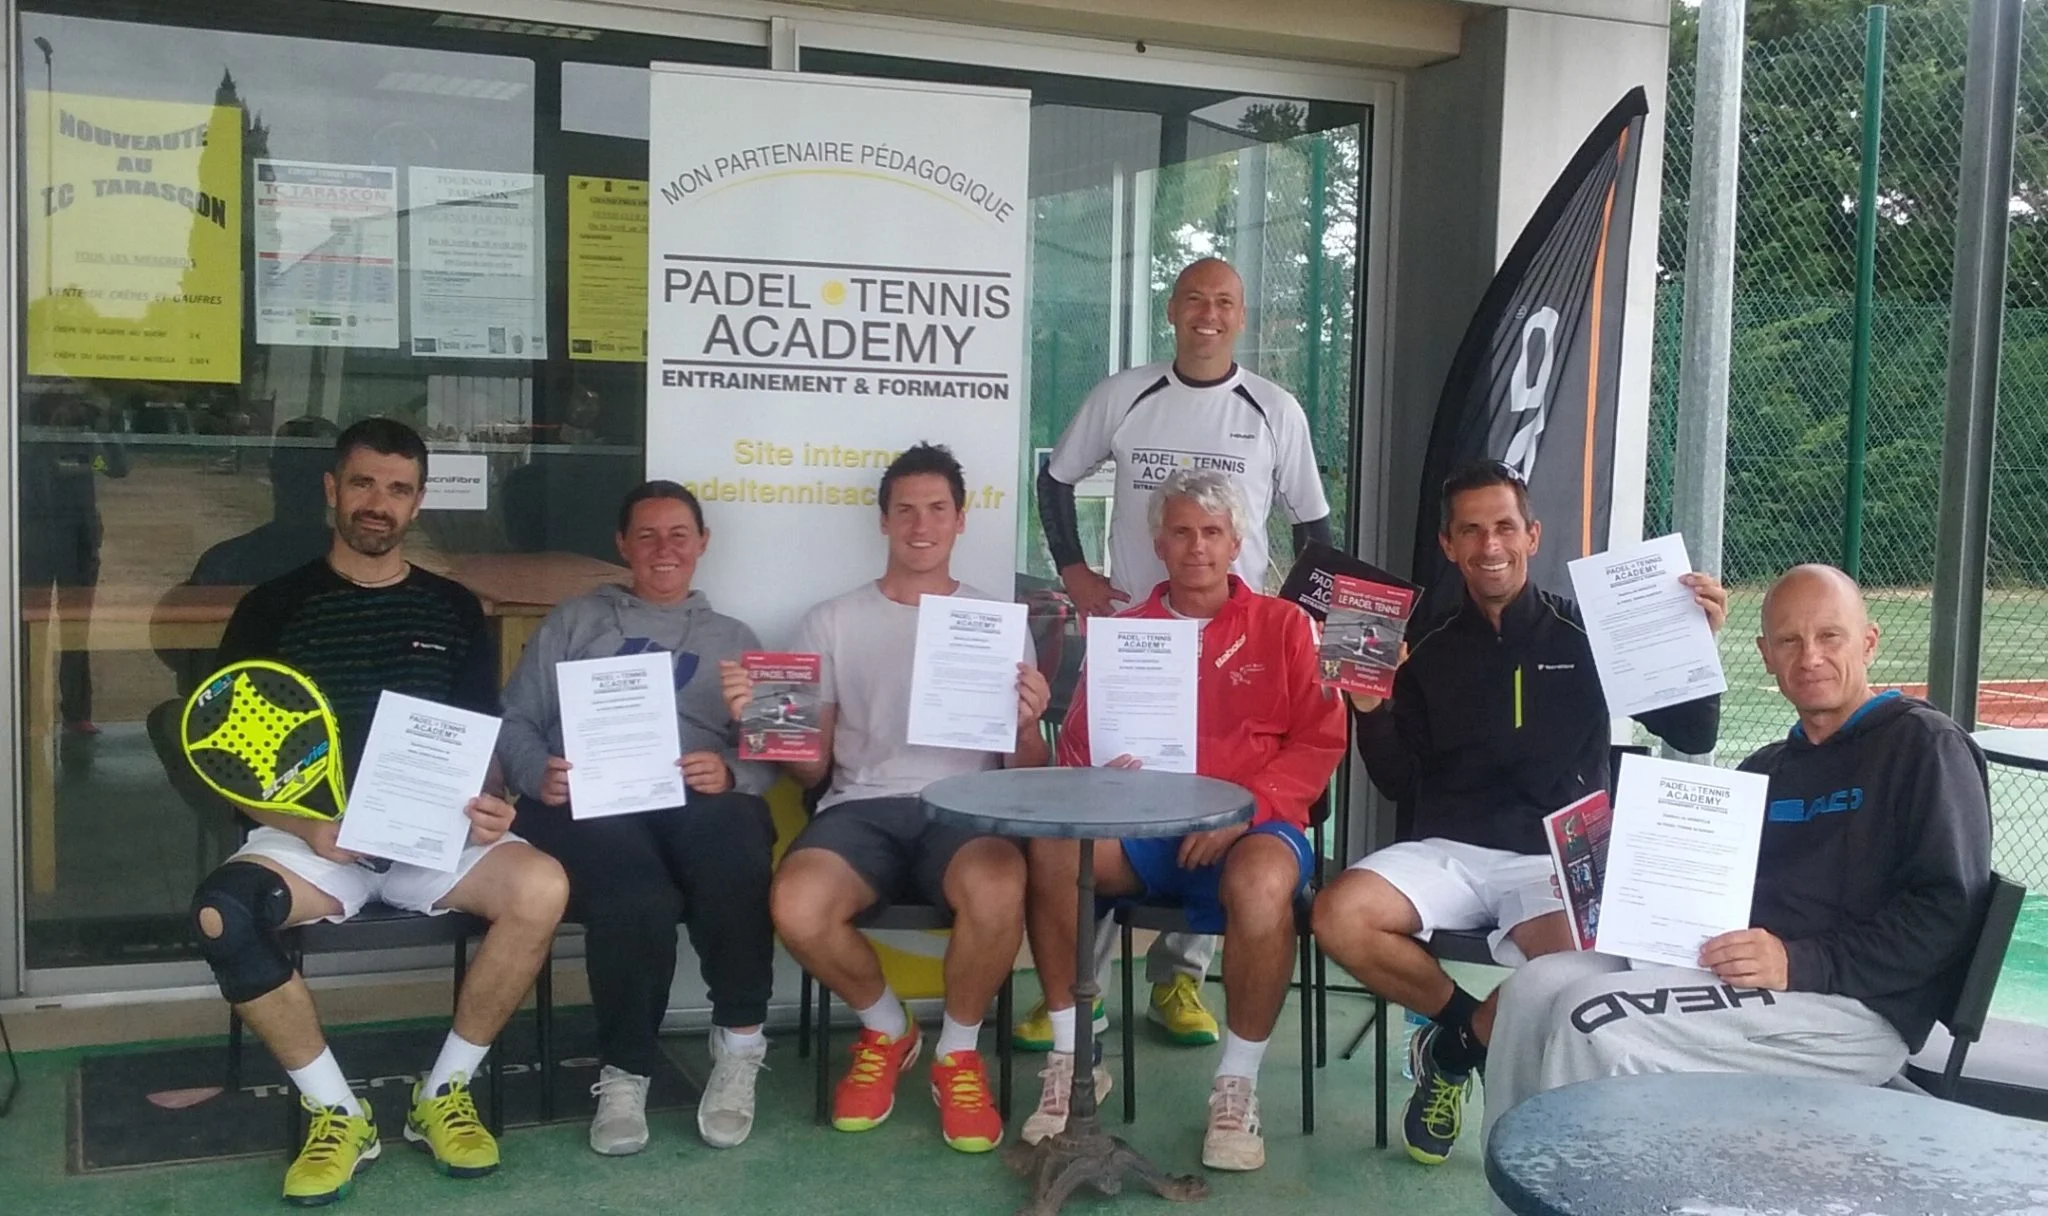 Einweihung des Tarascon Tennis Club mit Padel Tennis Academy